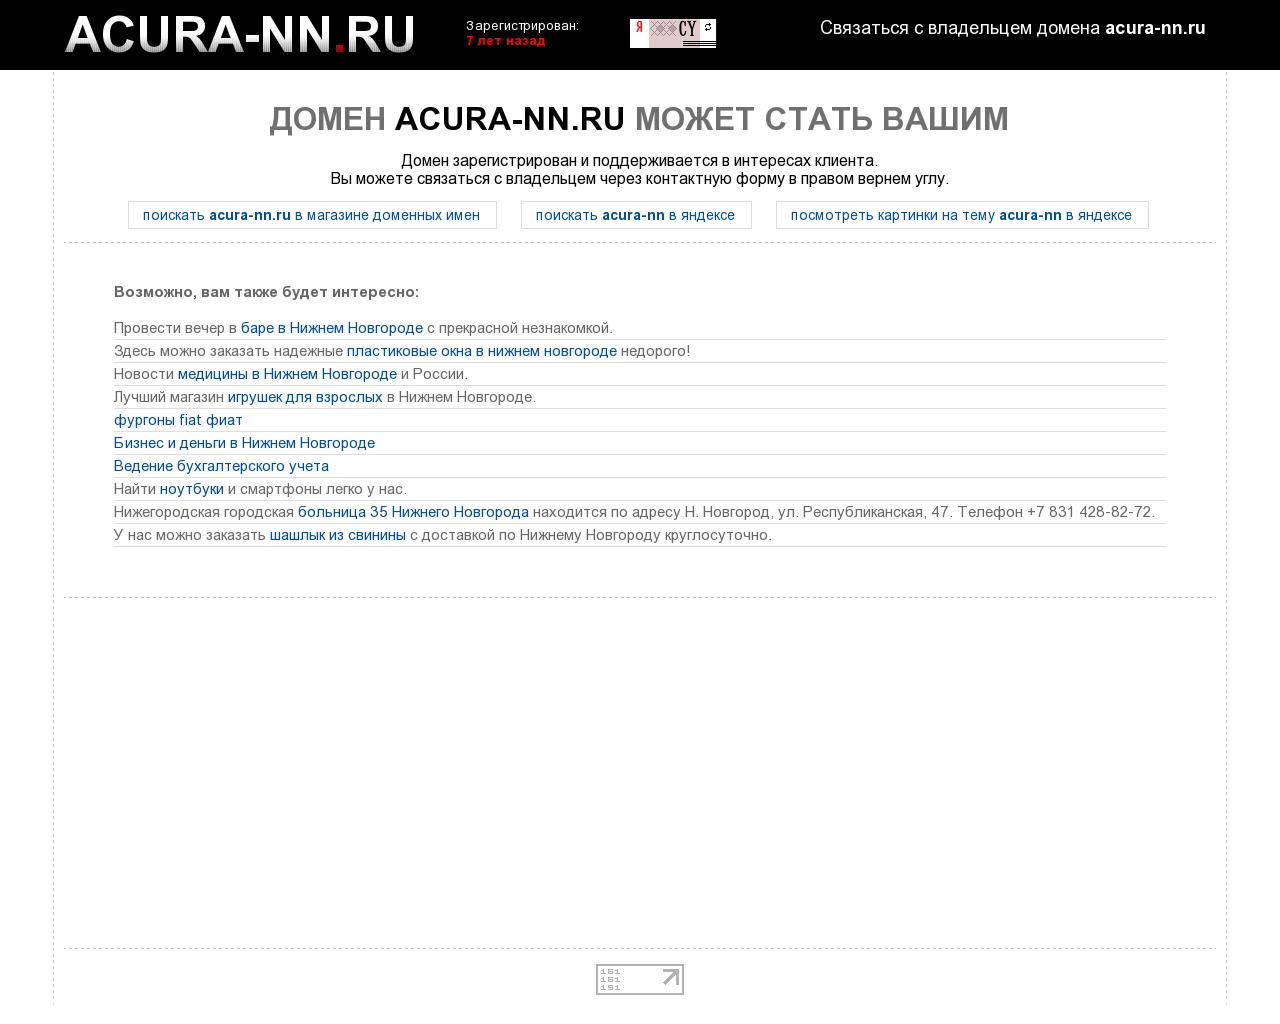 Изображение сайта acura-nn.ru в разрешении 1280x1024